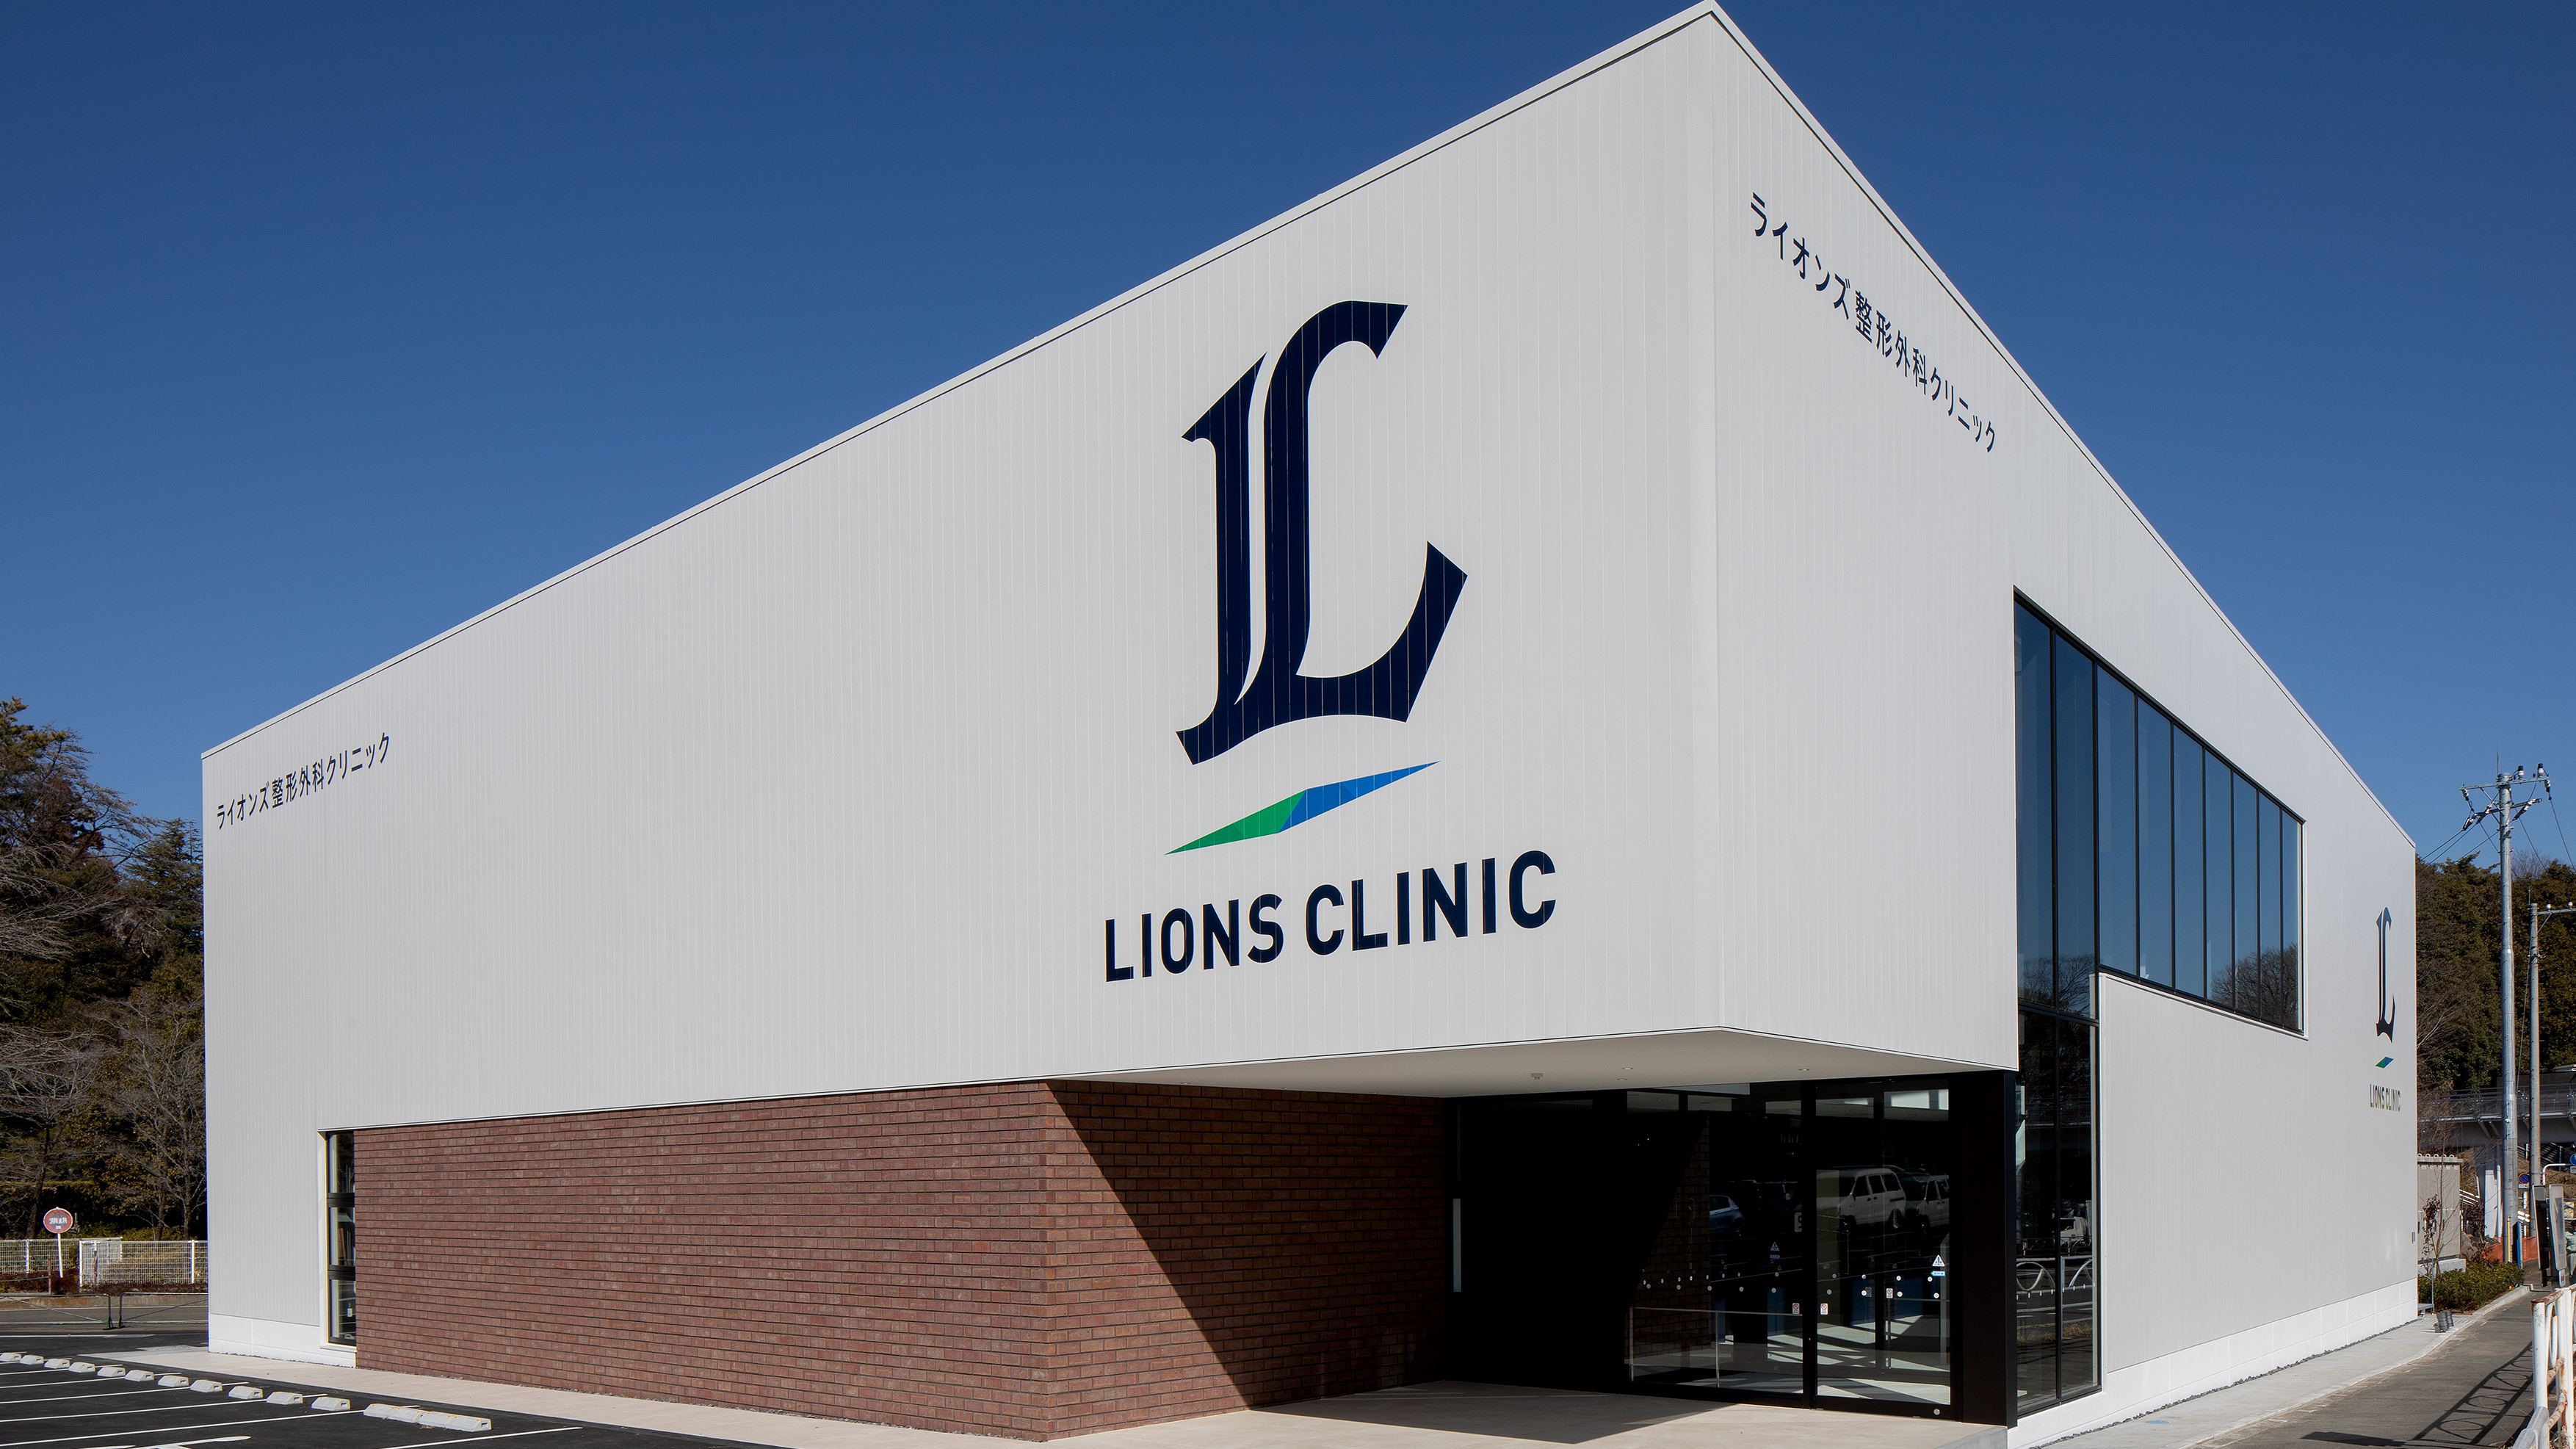 ライオンズが整形外科クリニックを開院した事情 地域住民もビジターチームも利用できる